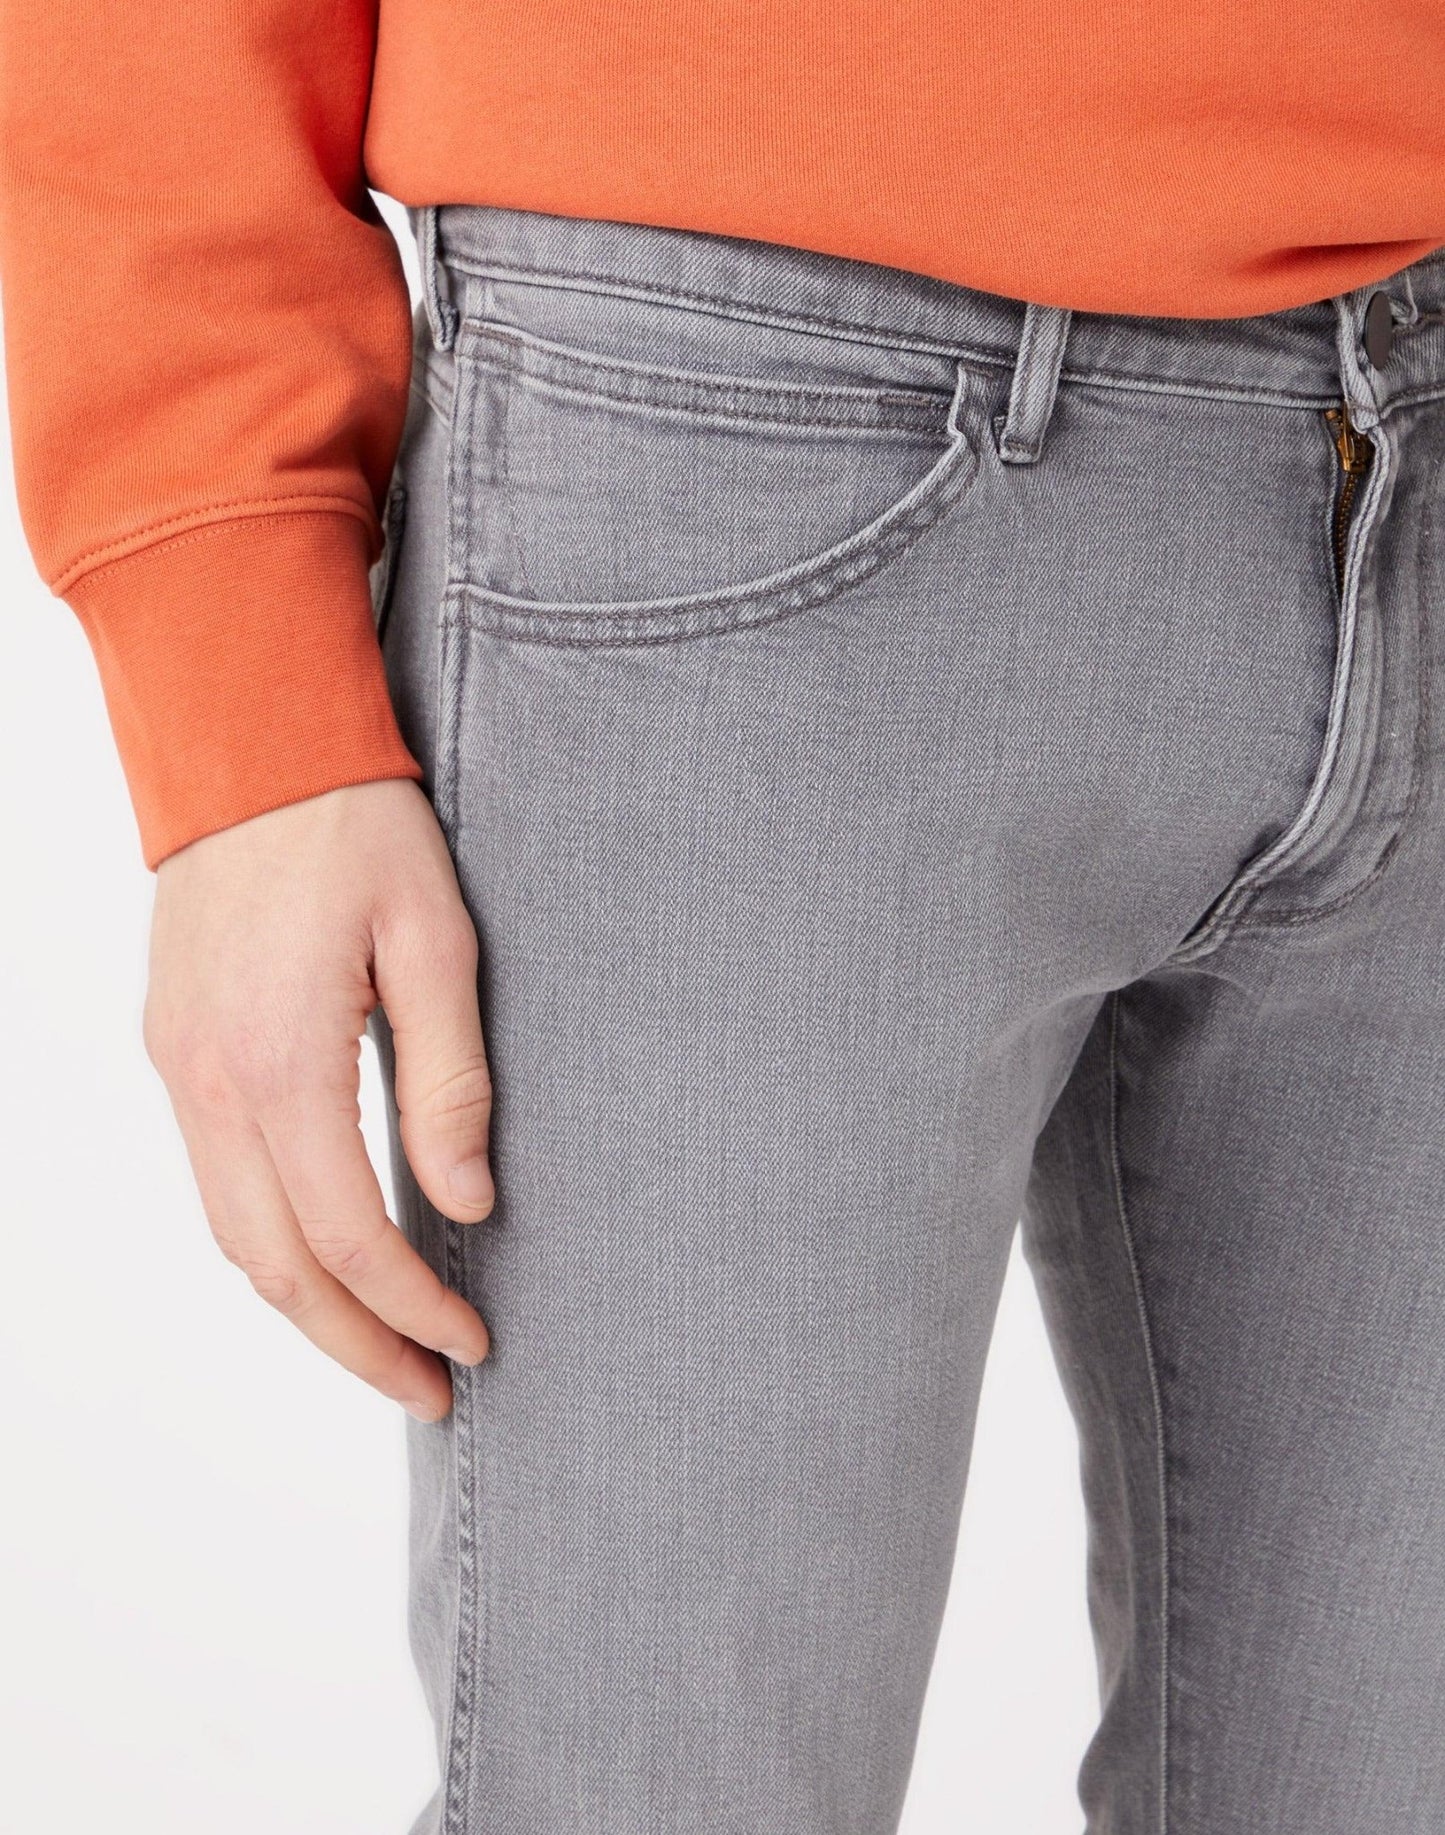 WRANGLER - ג'ינס Denim בצבע אפור ווש - MASHBIR//365